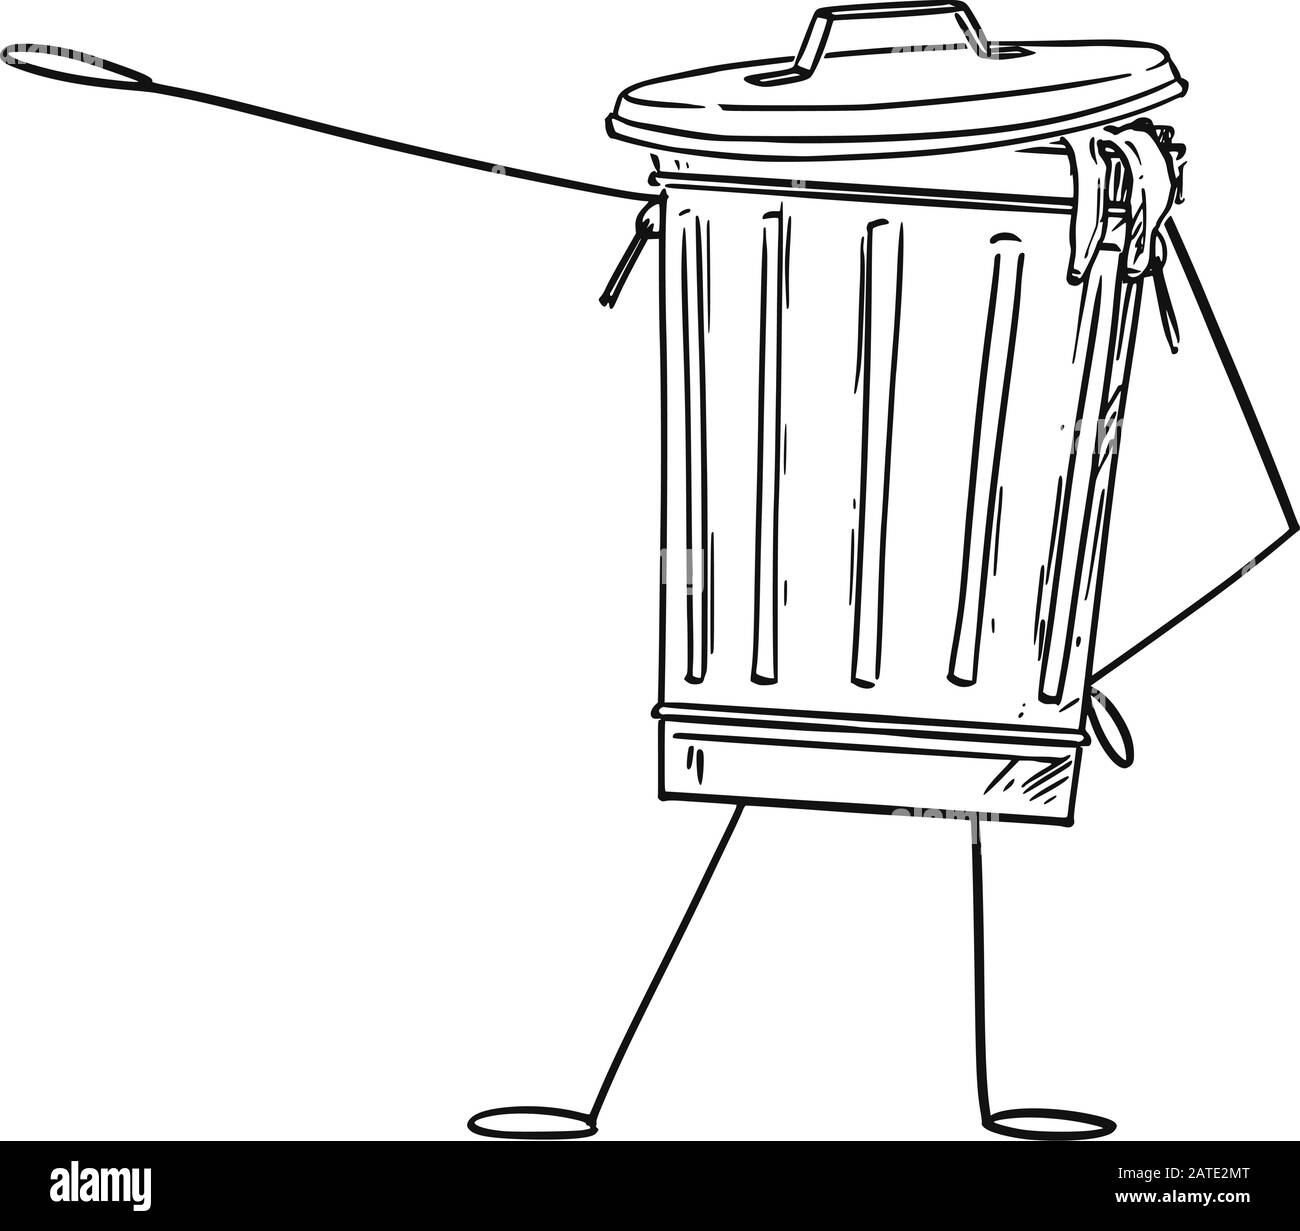 Vektorgrafiken von Cartoon-Mülleimer oder CAN-Zeichen, die etwas von Hand zeigen oder darauf zeigen. Recycling- oder Umweltwerbung oder Marketingdesign. Stock Vektor